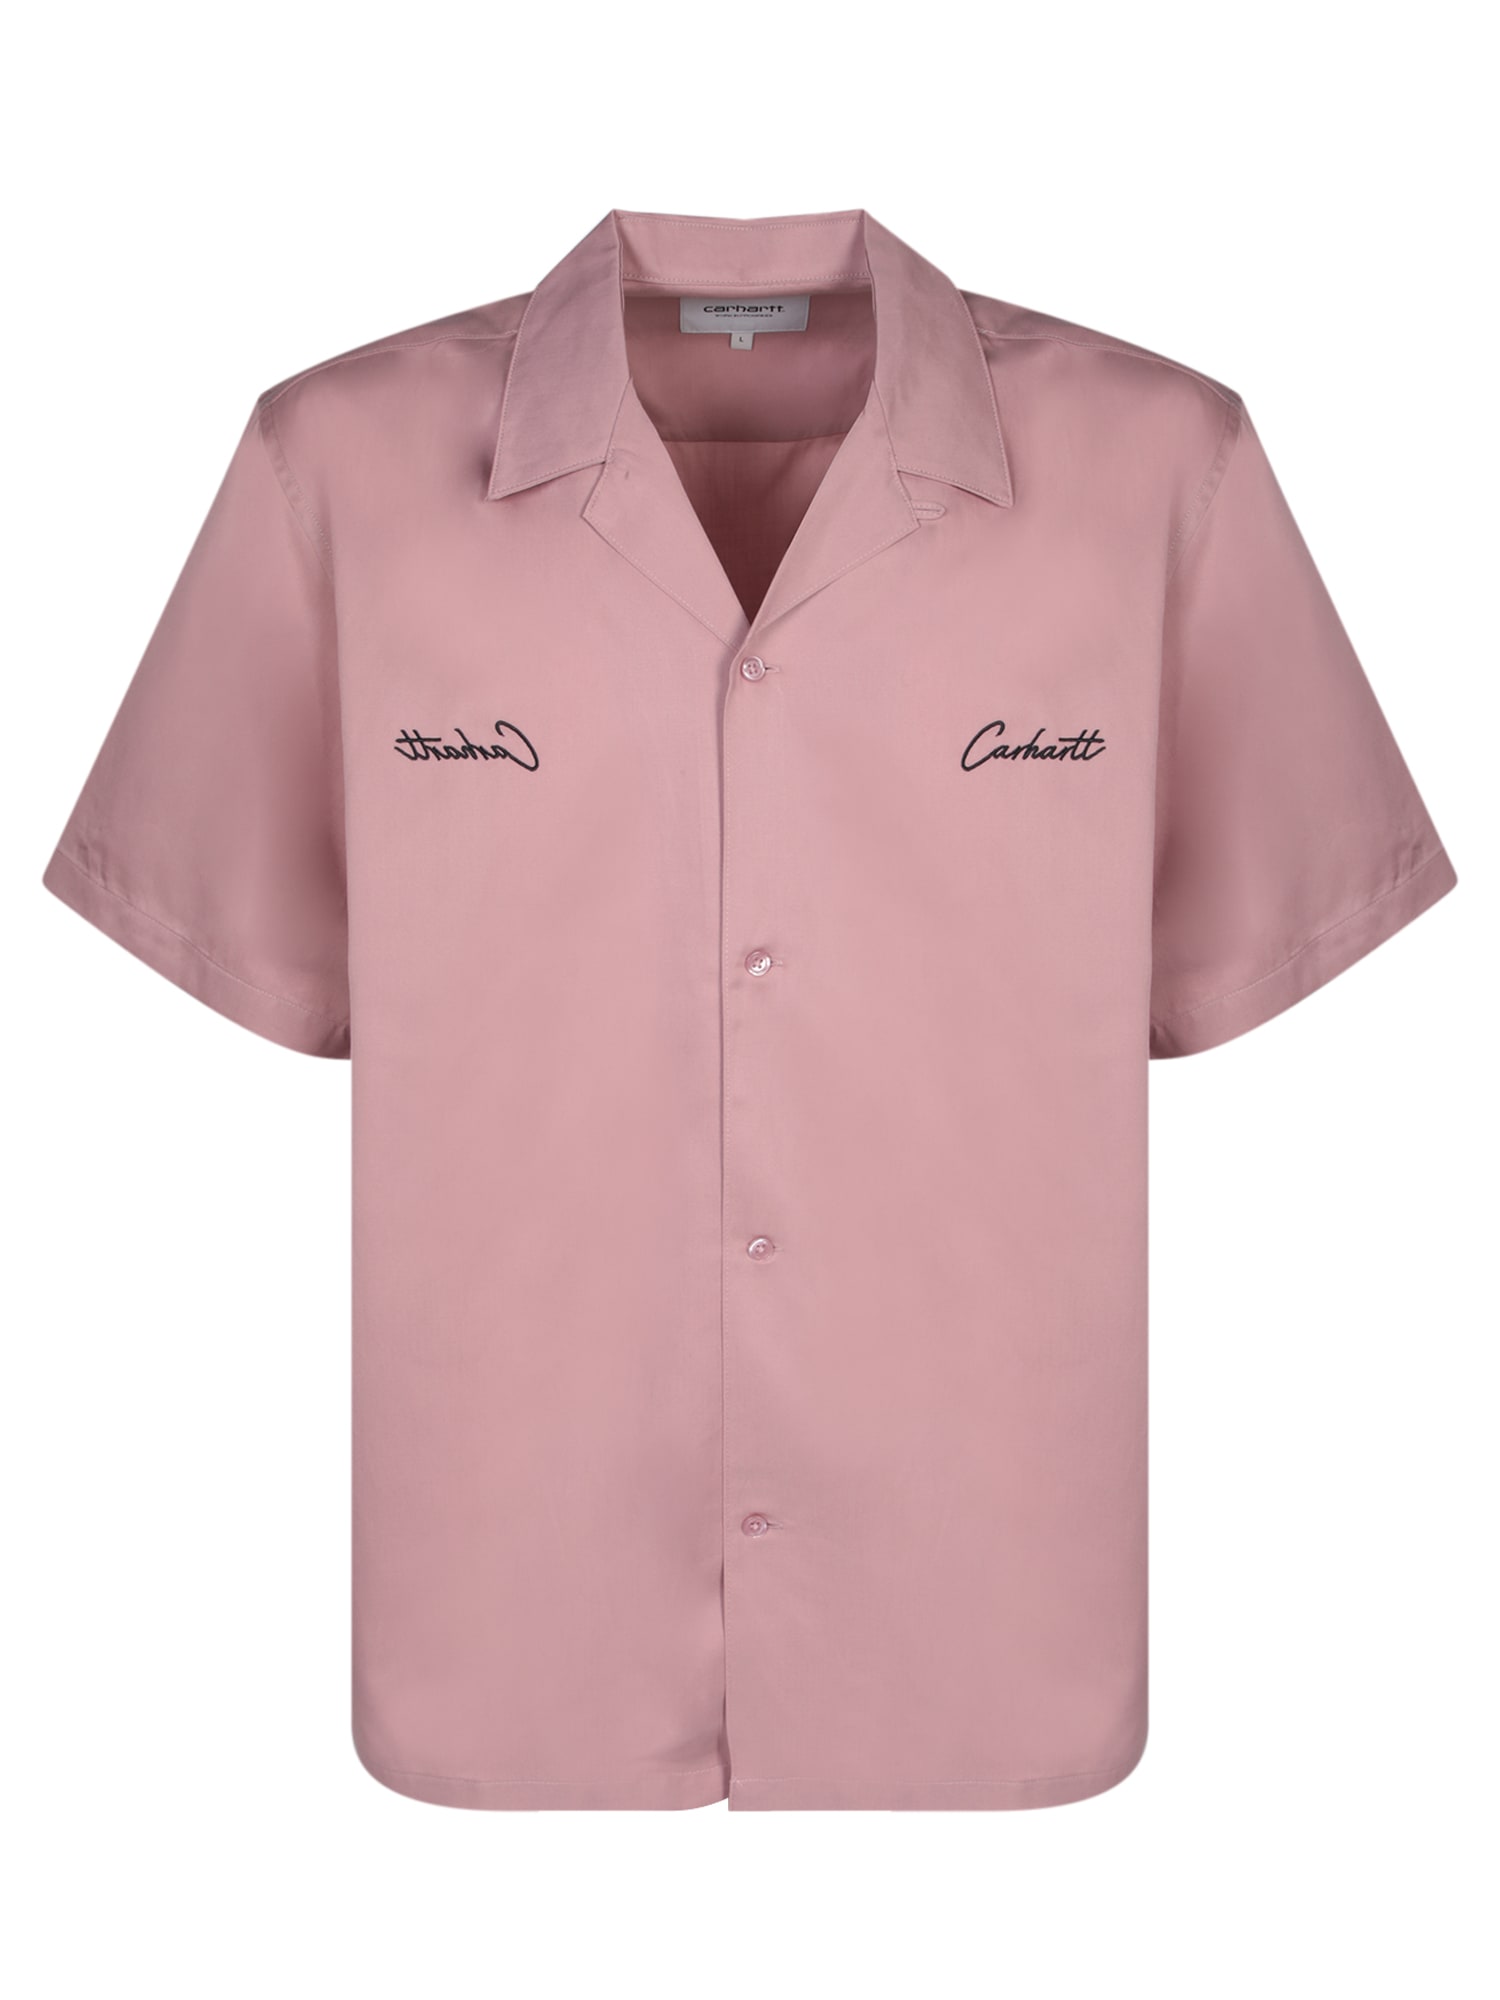 Delray Pink Shirt